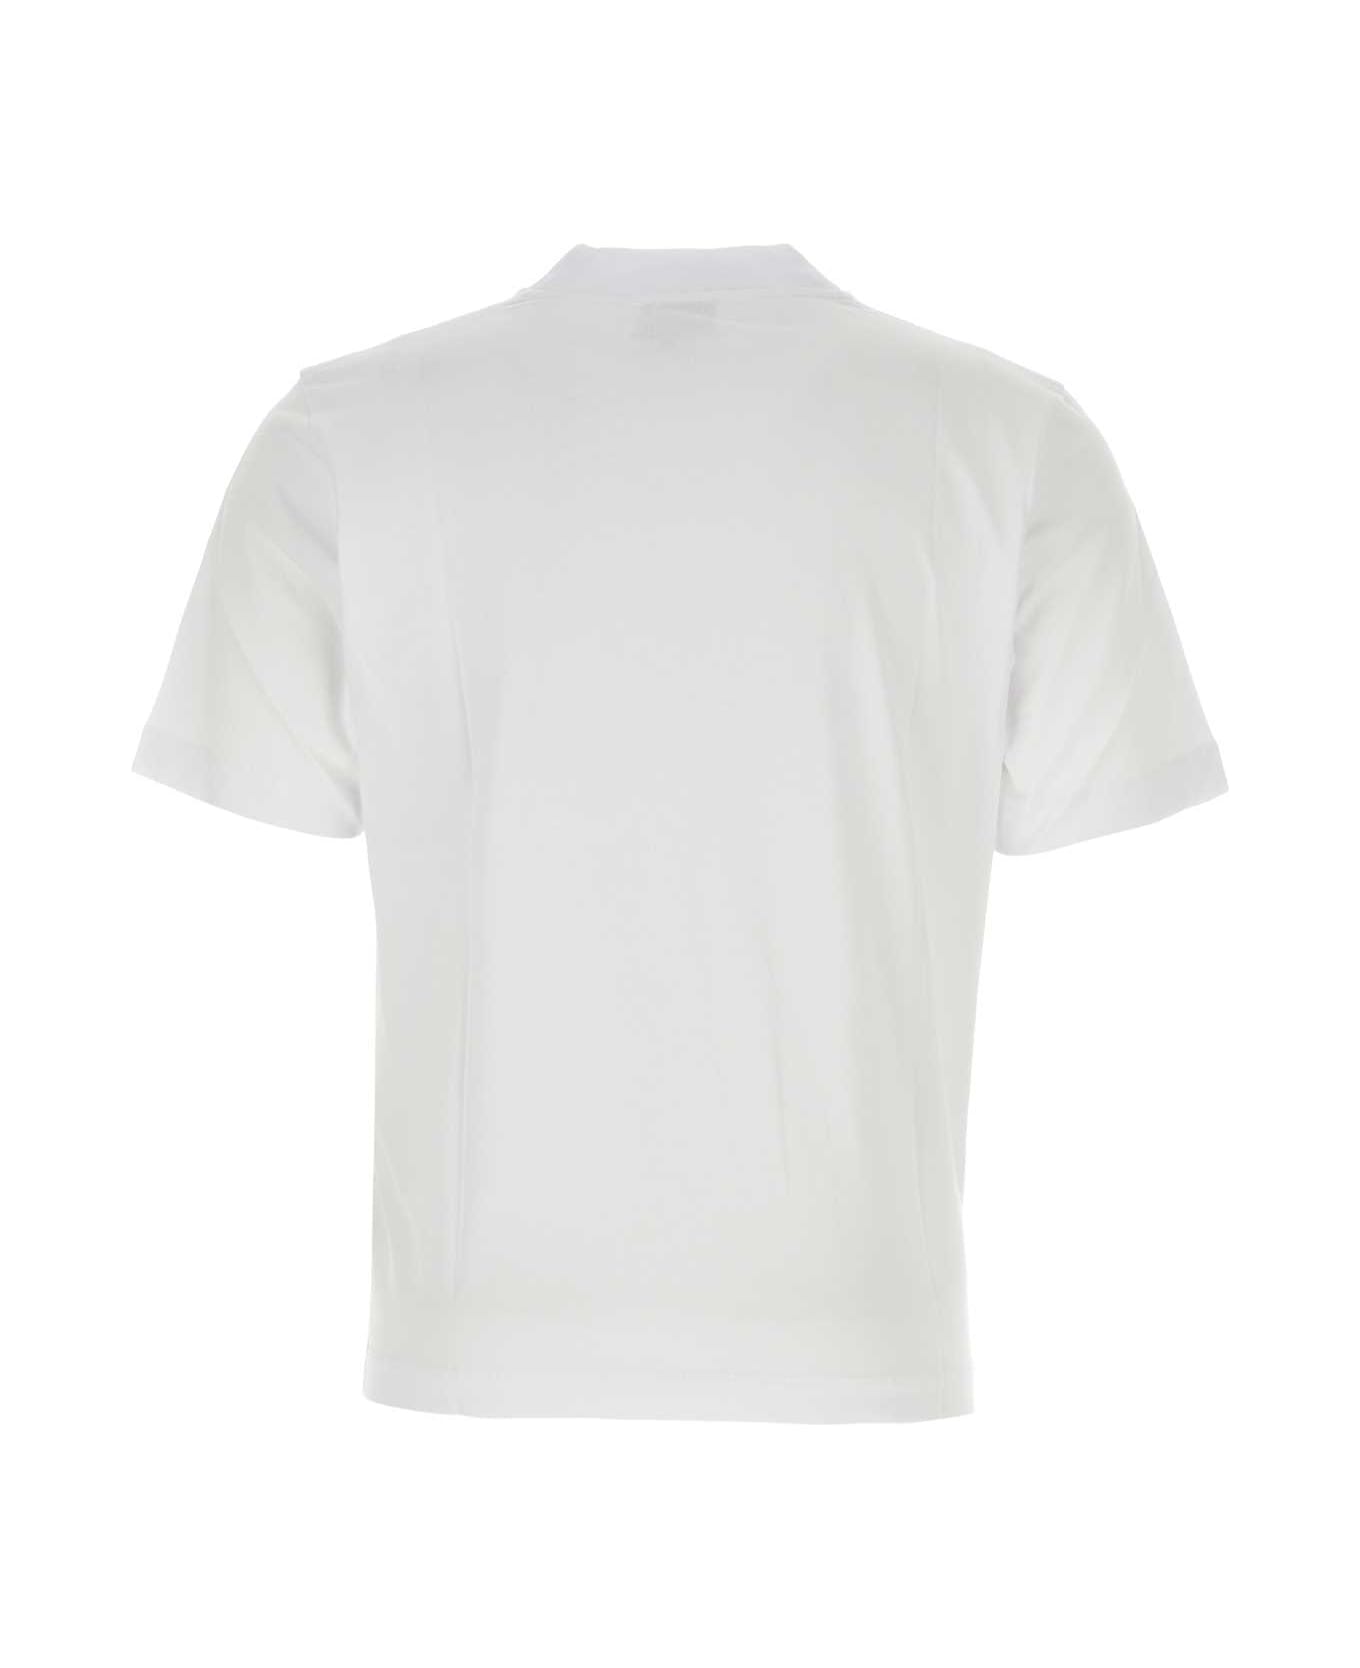 Études White Cotton T-shirt - WHITE